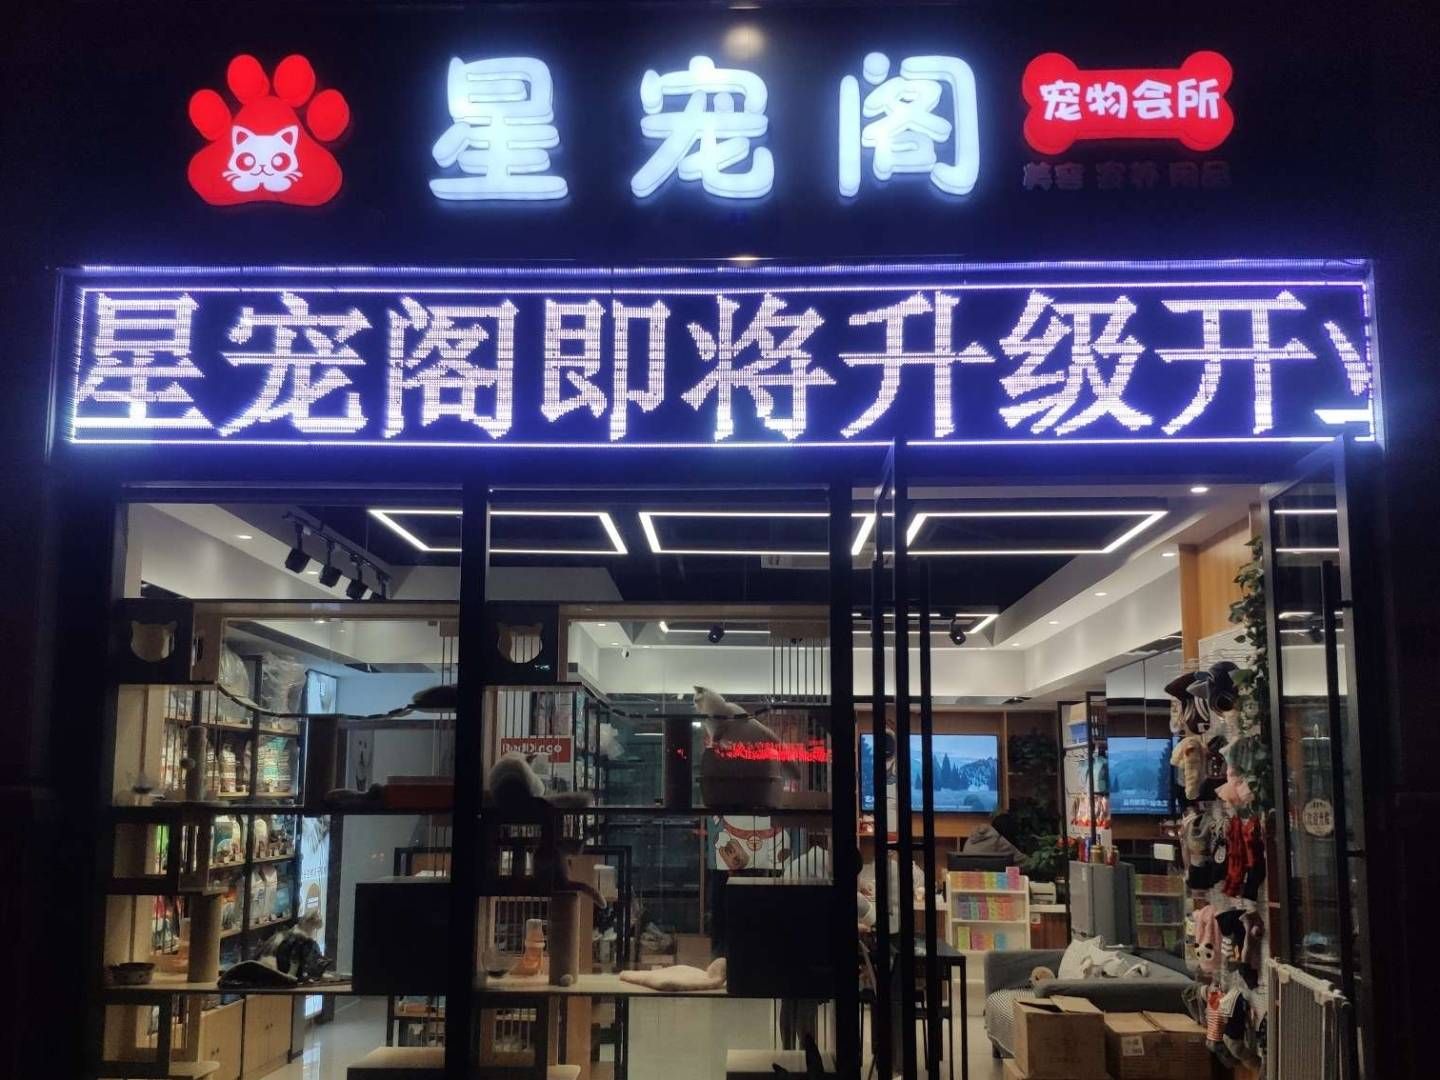 江苏苏州吴中区 170平 宠物店 25万 对外转让承包